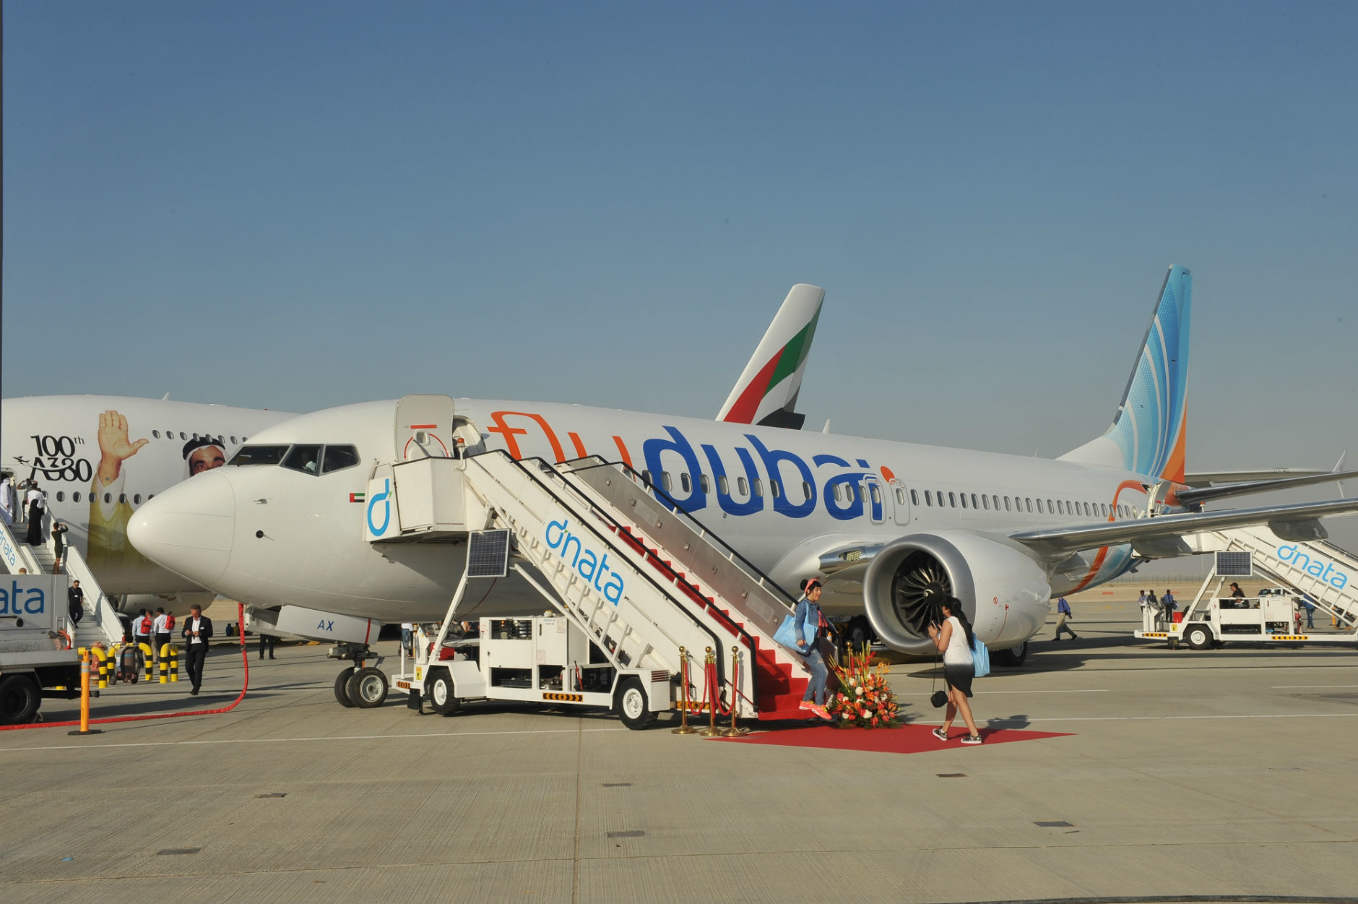 Dubai Airshow 2017: Boeing, flydubai sign $27bn 737 MAX deal